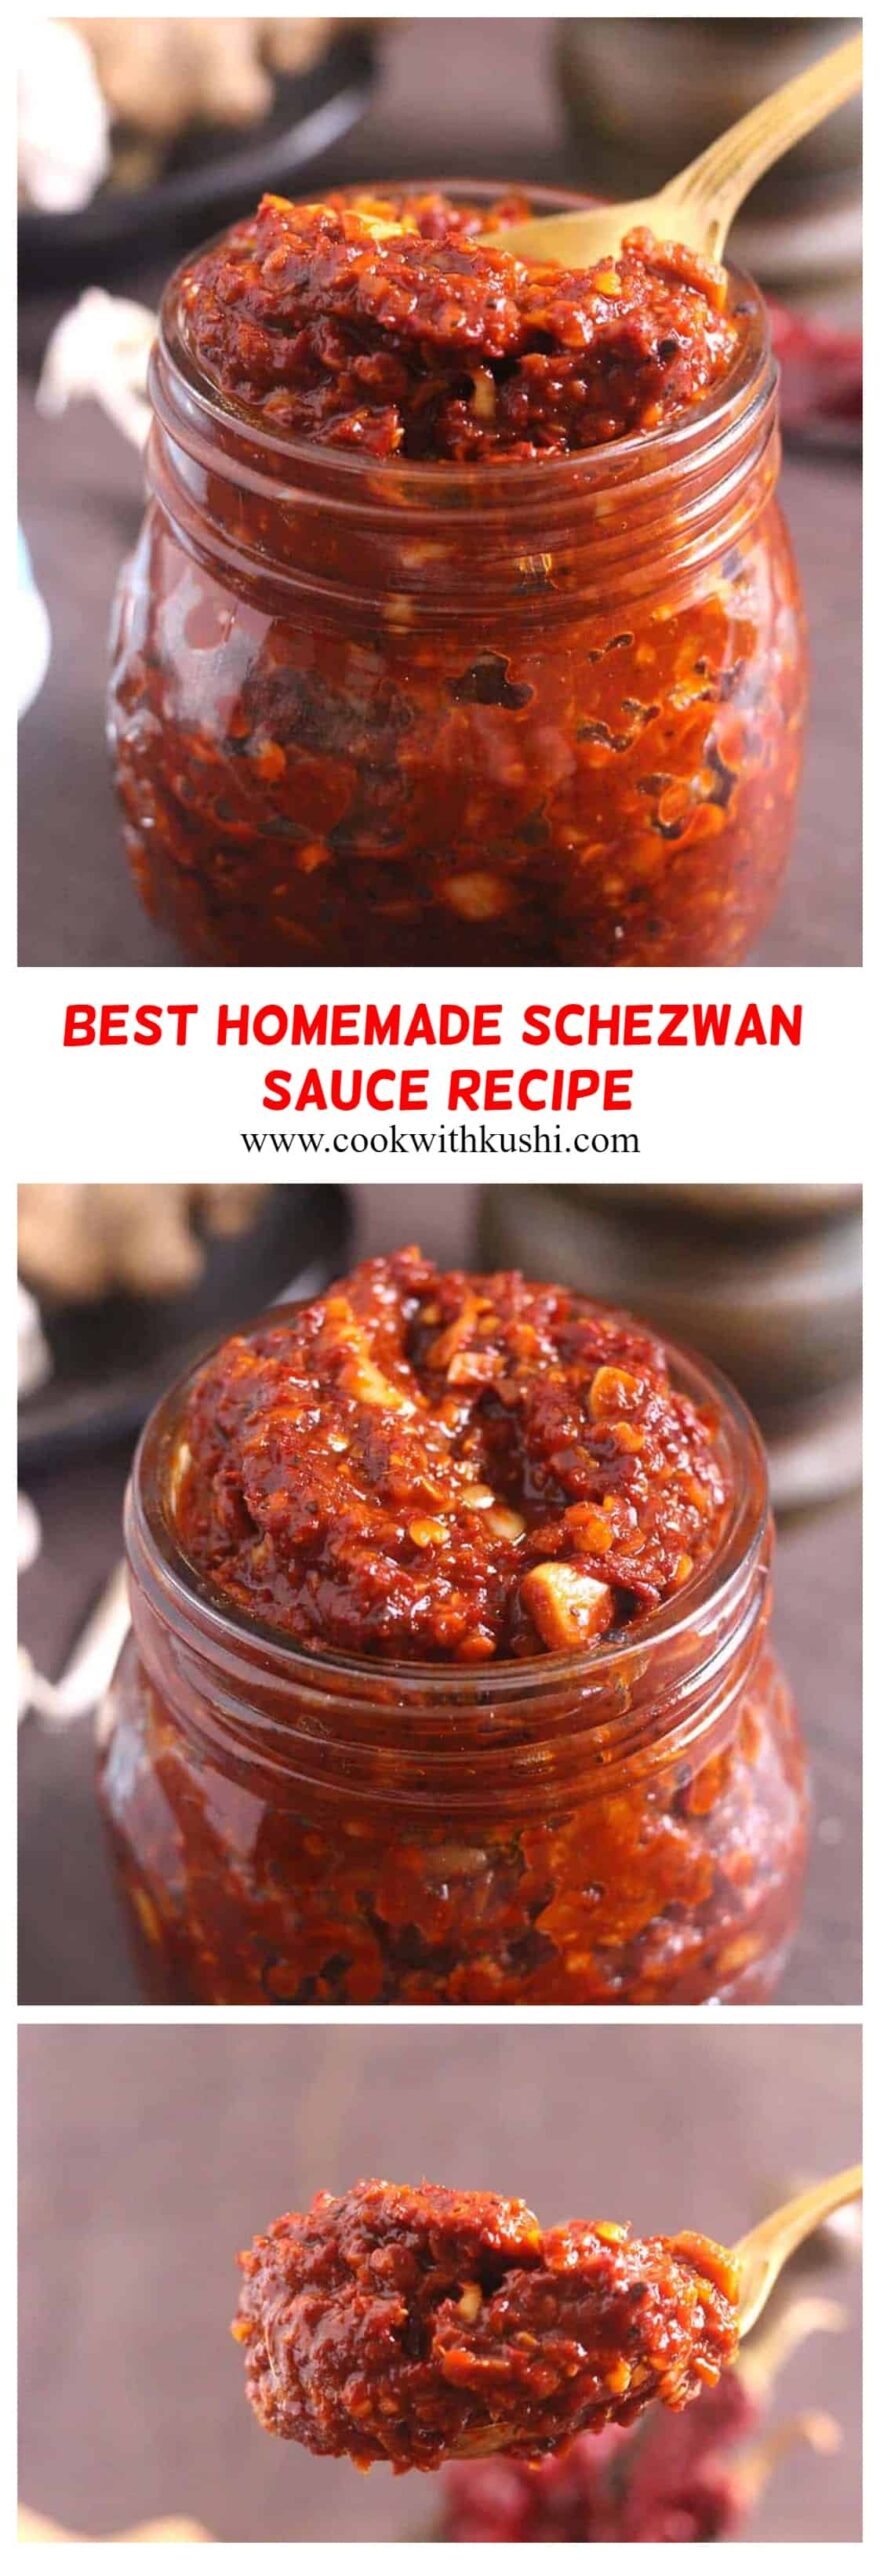 How to make schezwan sauce at home, homemade szechuan sauce